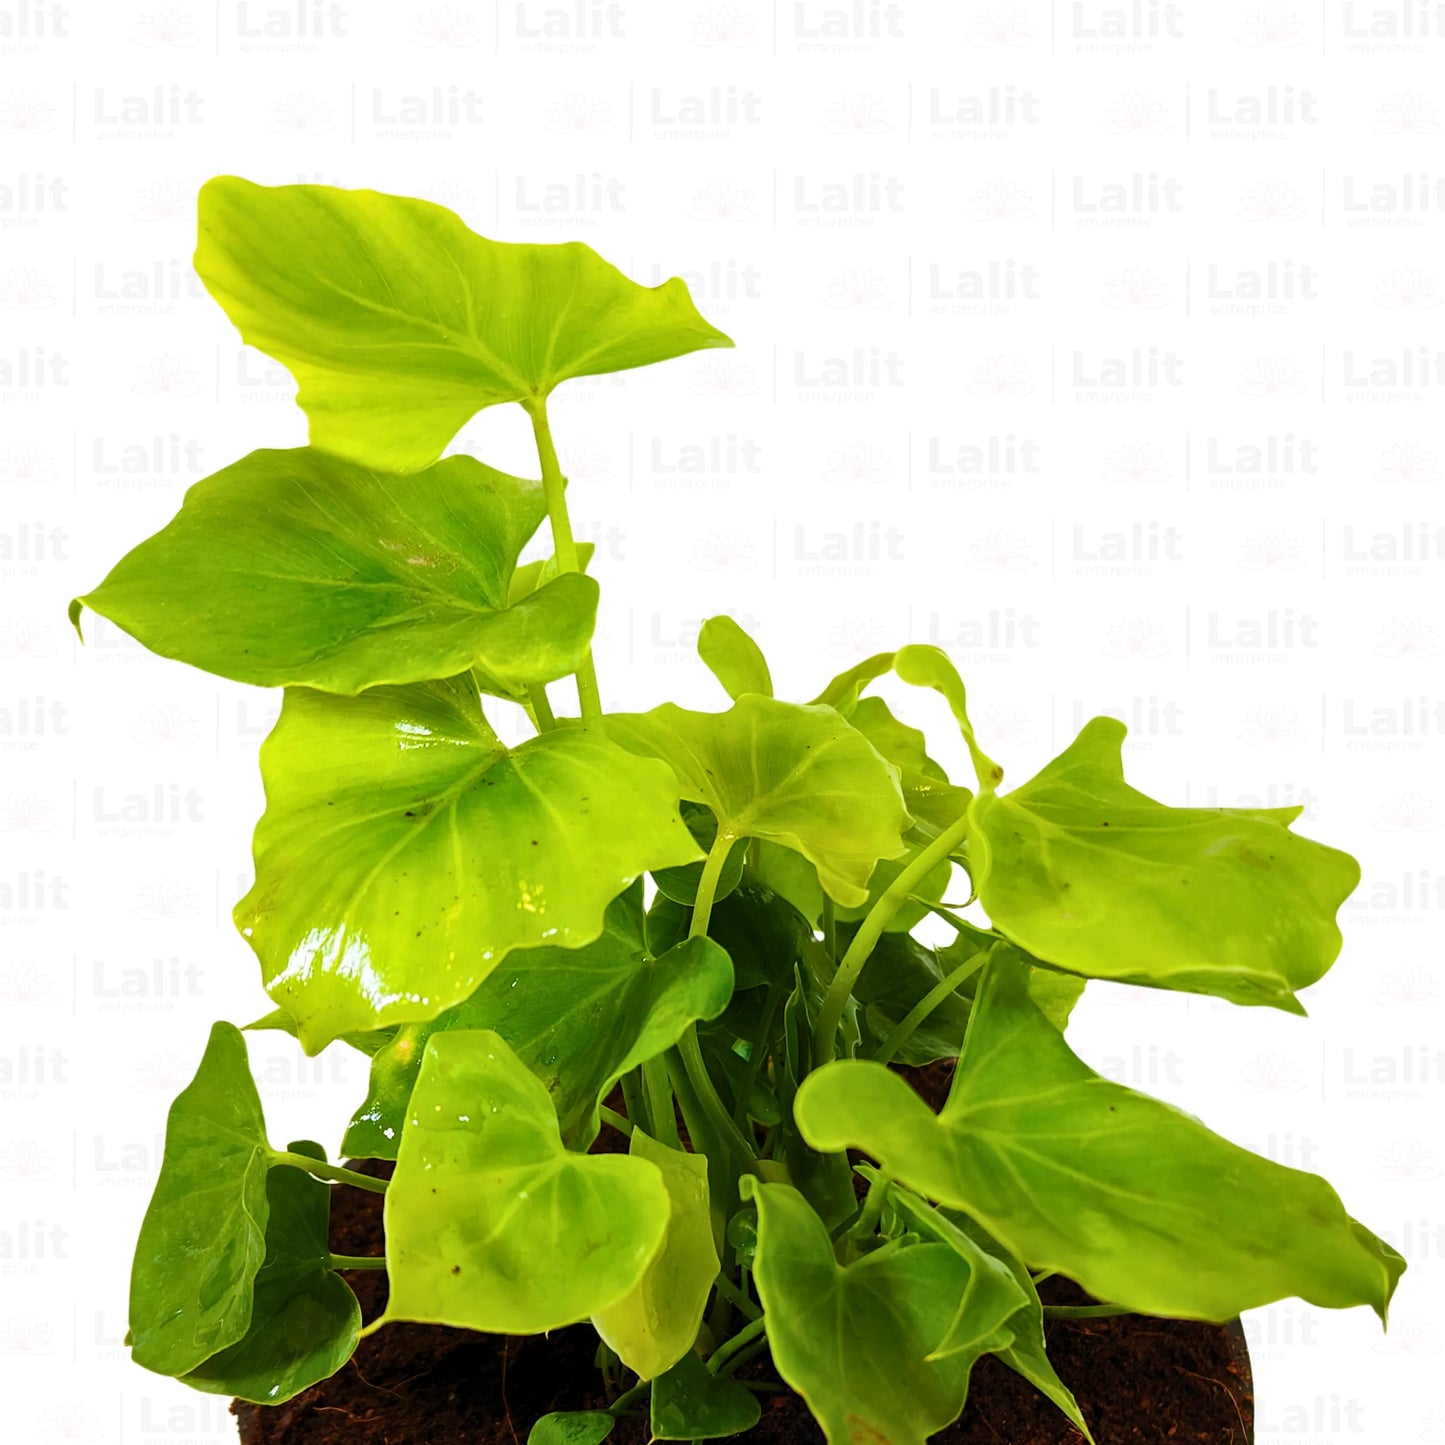 Buy Miniature Philodendron Selloum - Plant Online at Lalitenterprise